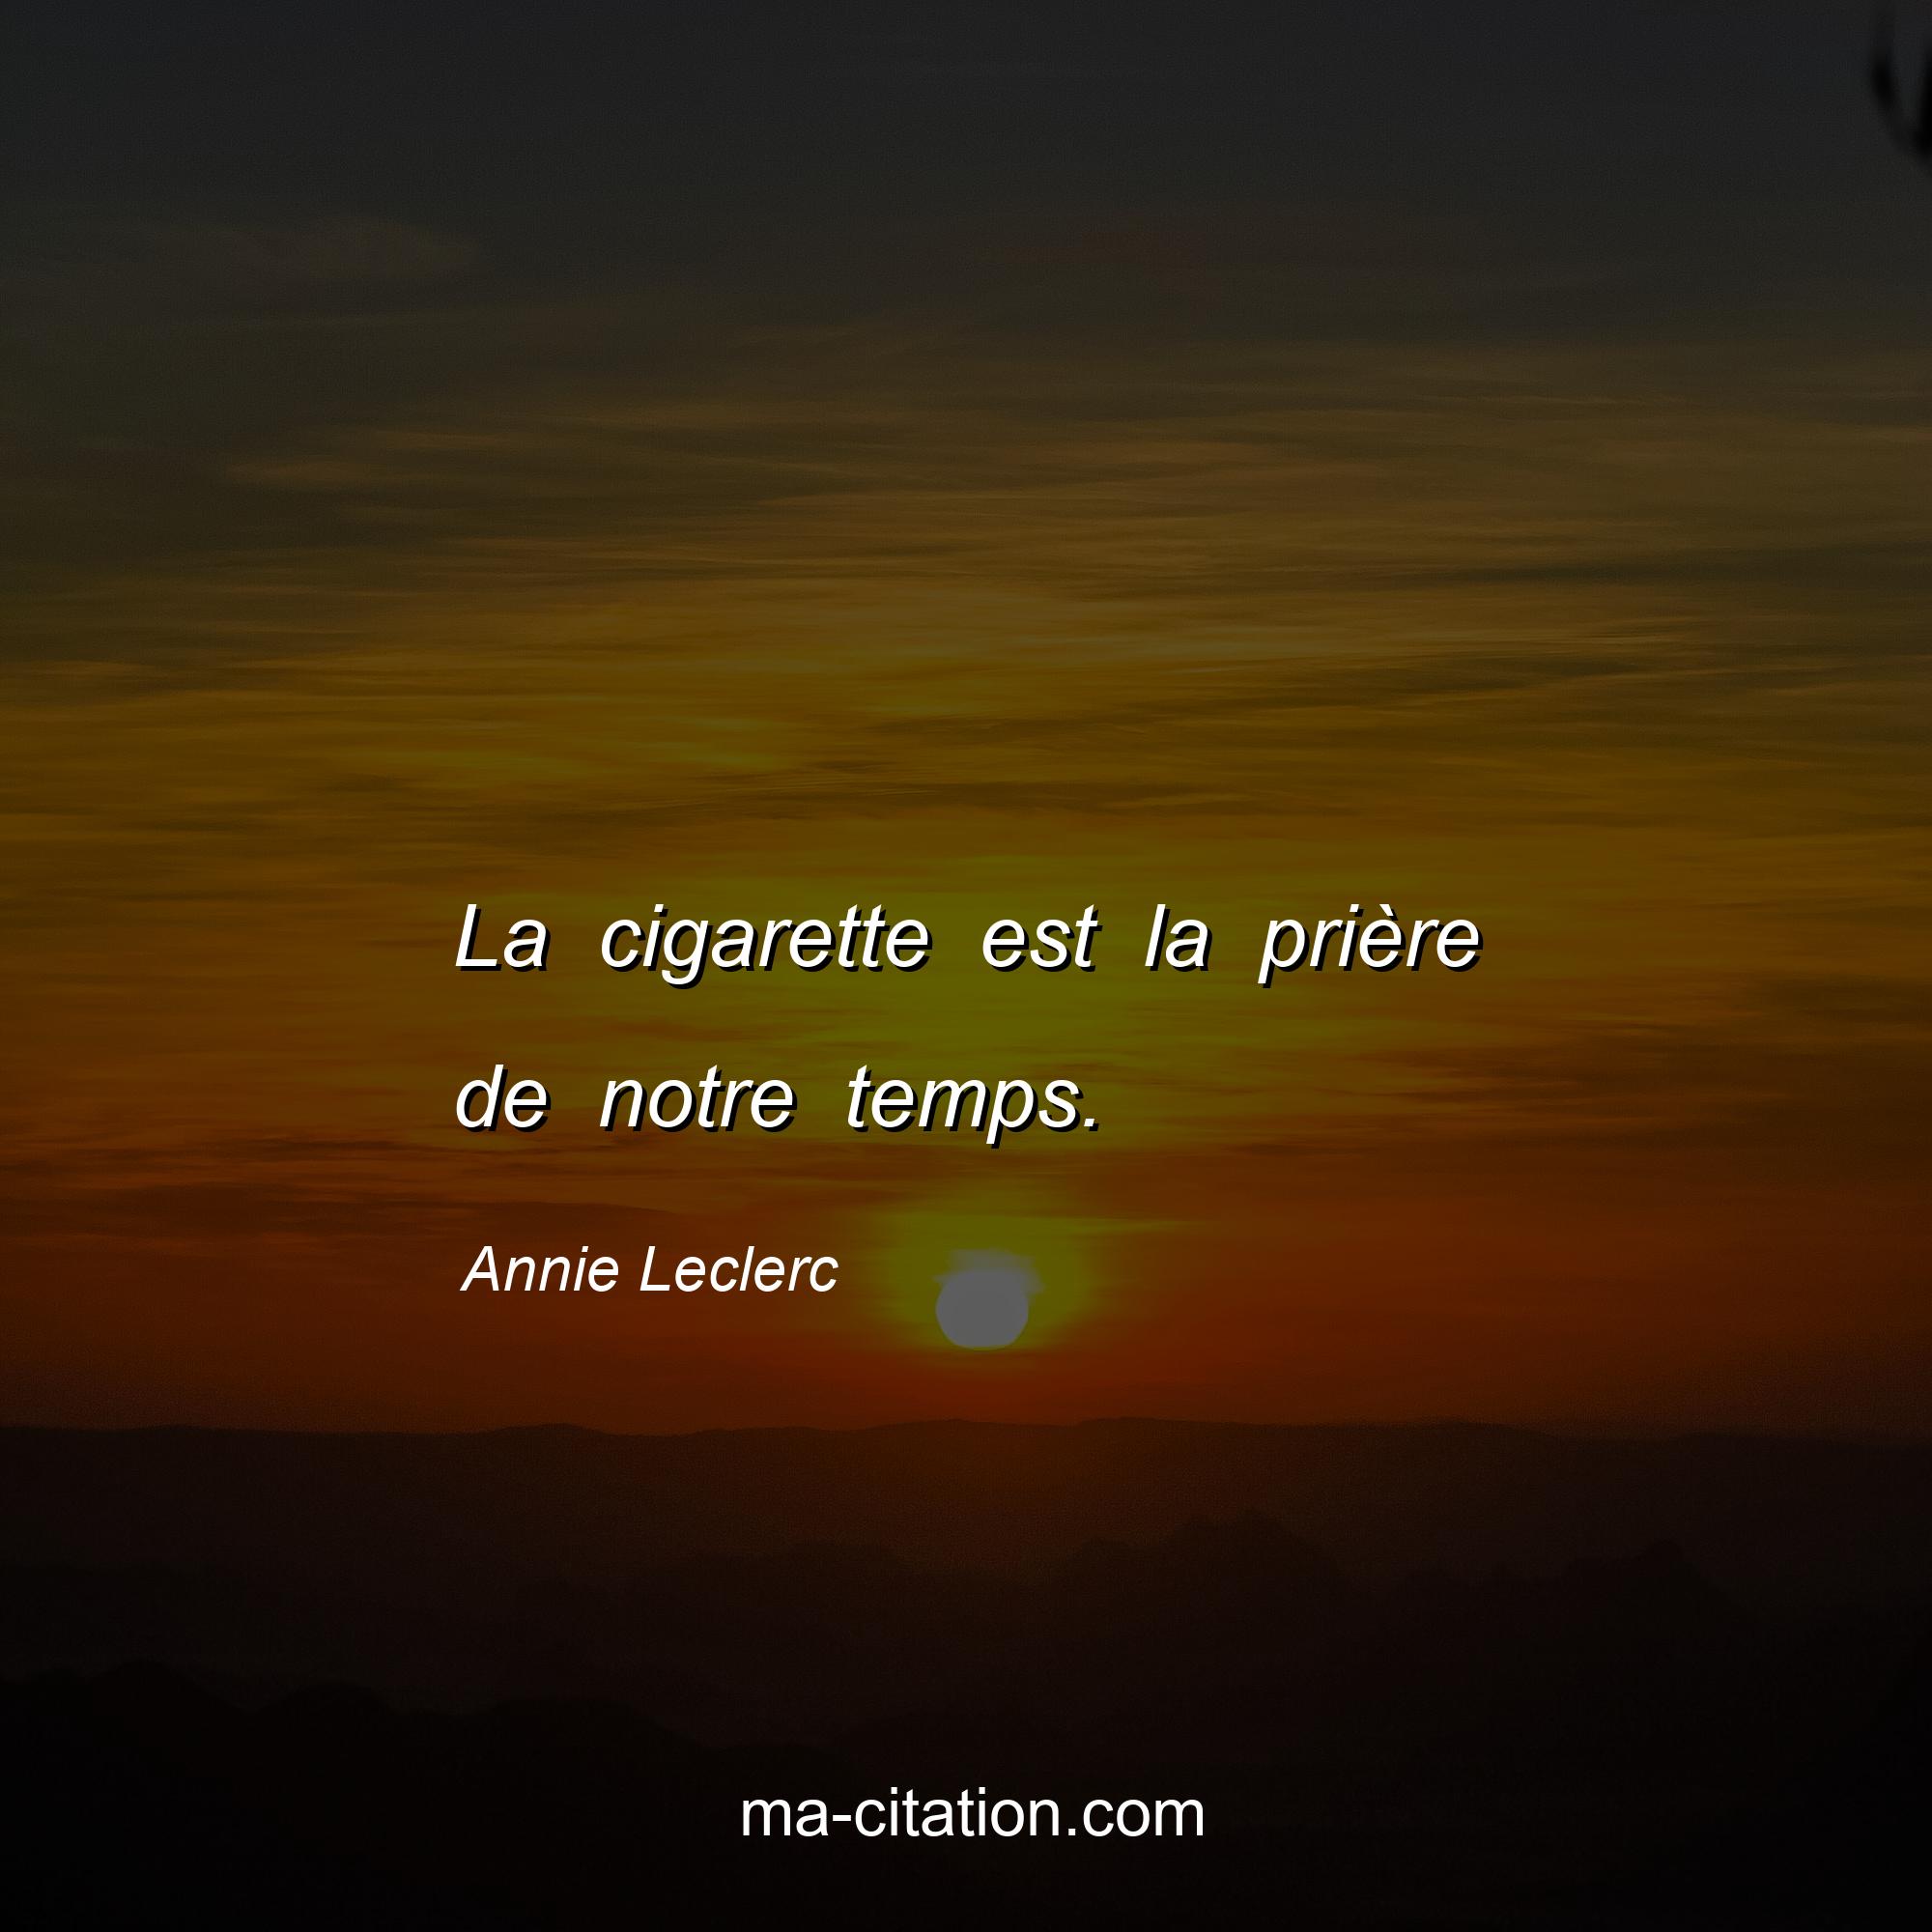 Annie Leclerc : La cigarette est la prière de notre temps.